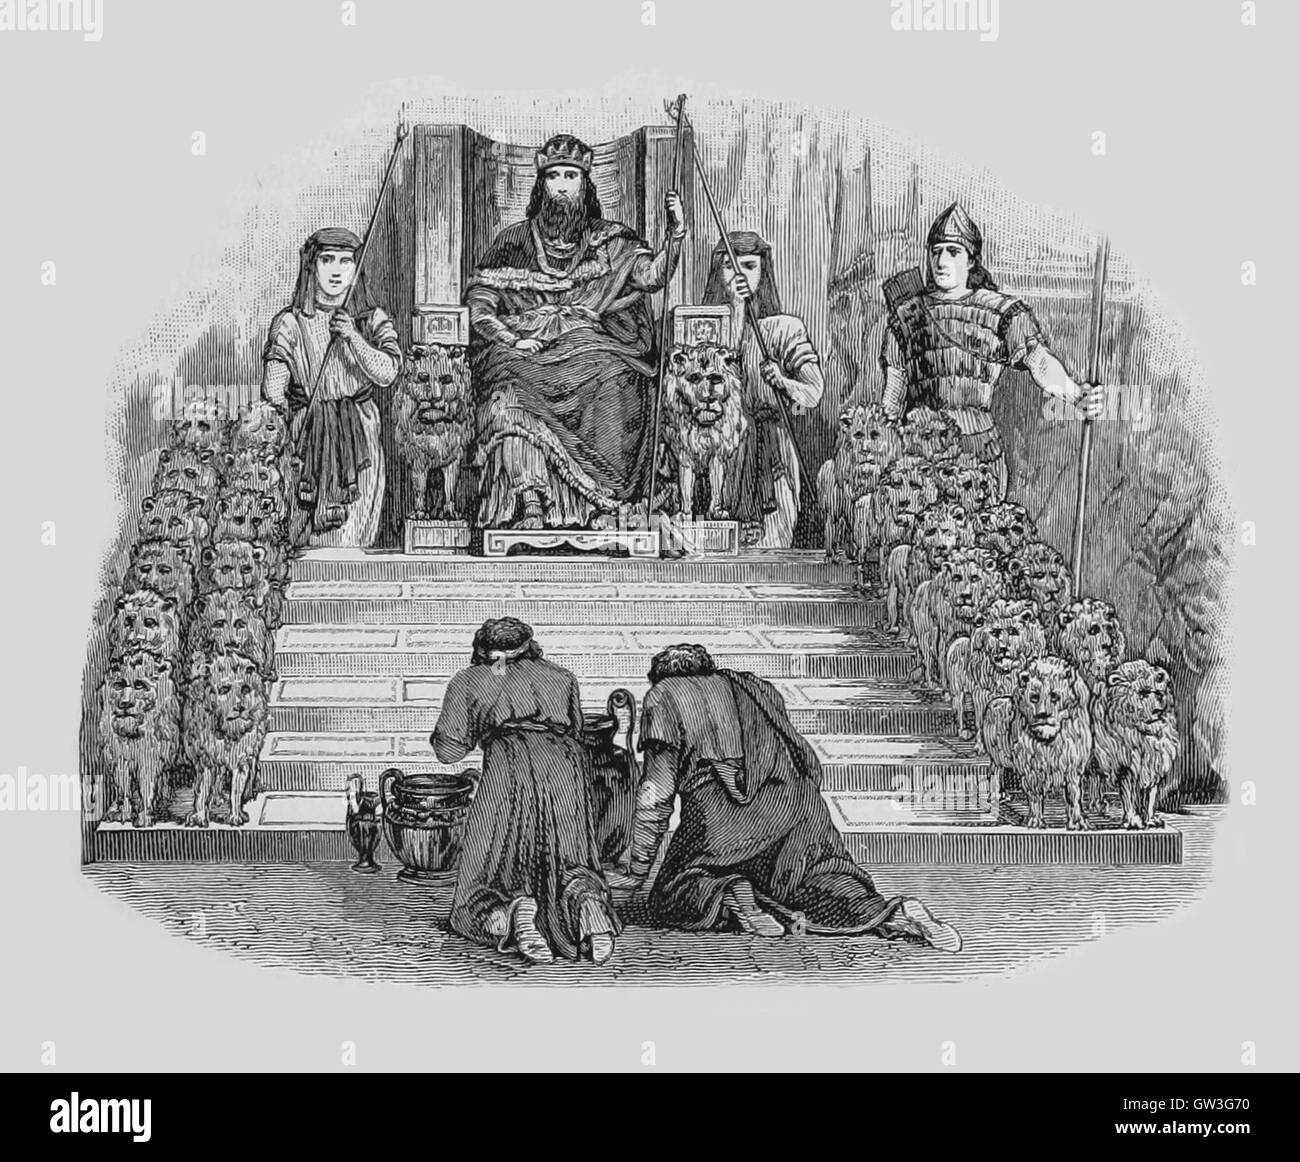 Il re Salomone sul trono il trono di Salomone è il trono del re Salomone  nella Bibbia ebraica ed è un motivo nel Giudaismo, Cristianesimo e Islam.  Salomone fu un favolosamente ricco